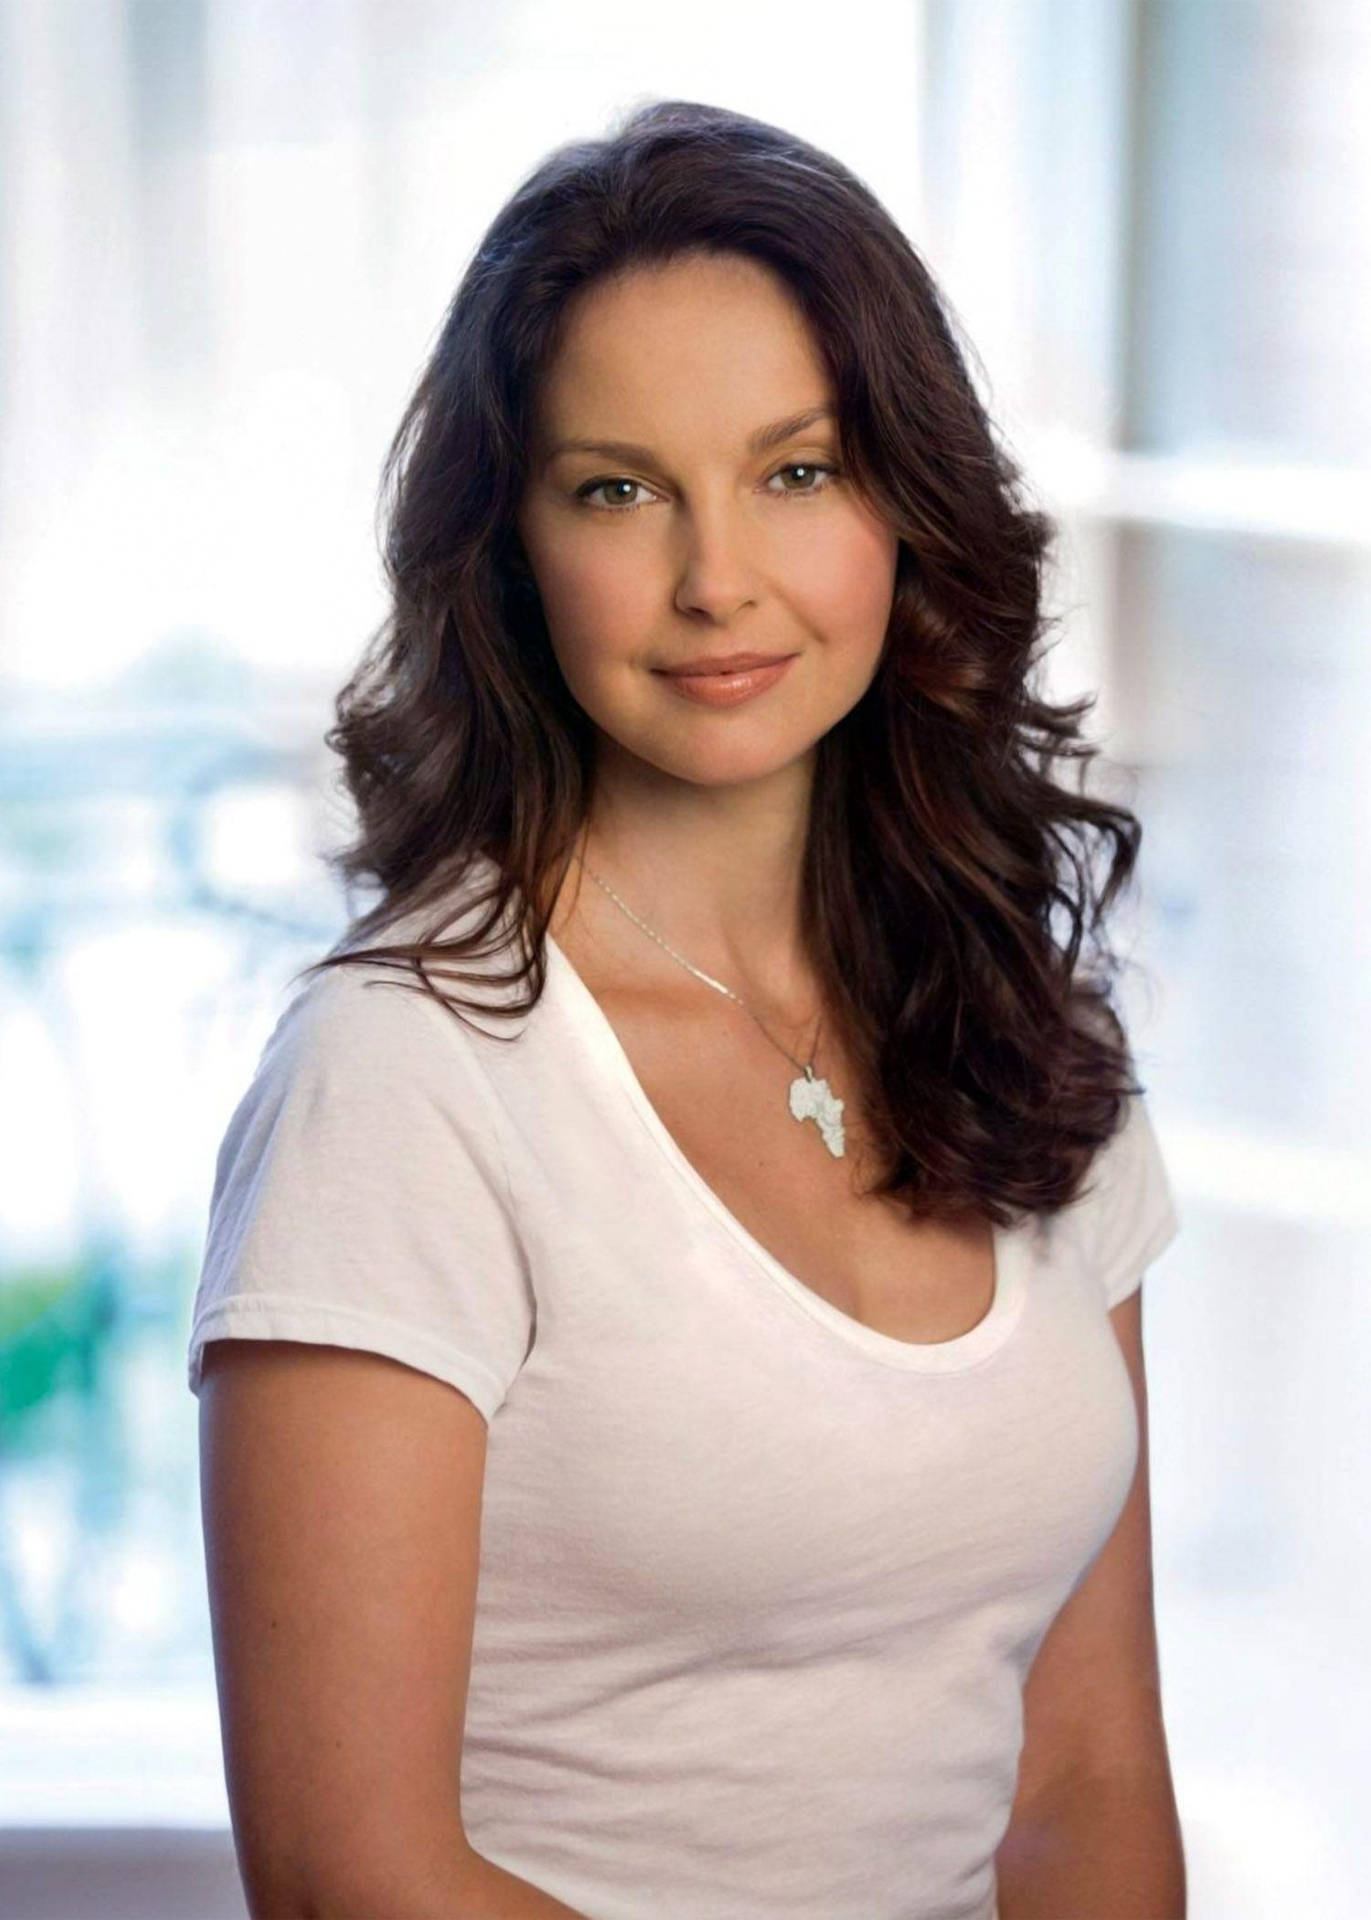 Ashley Judd Portrait Background